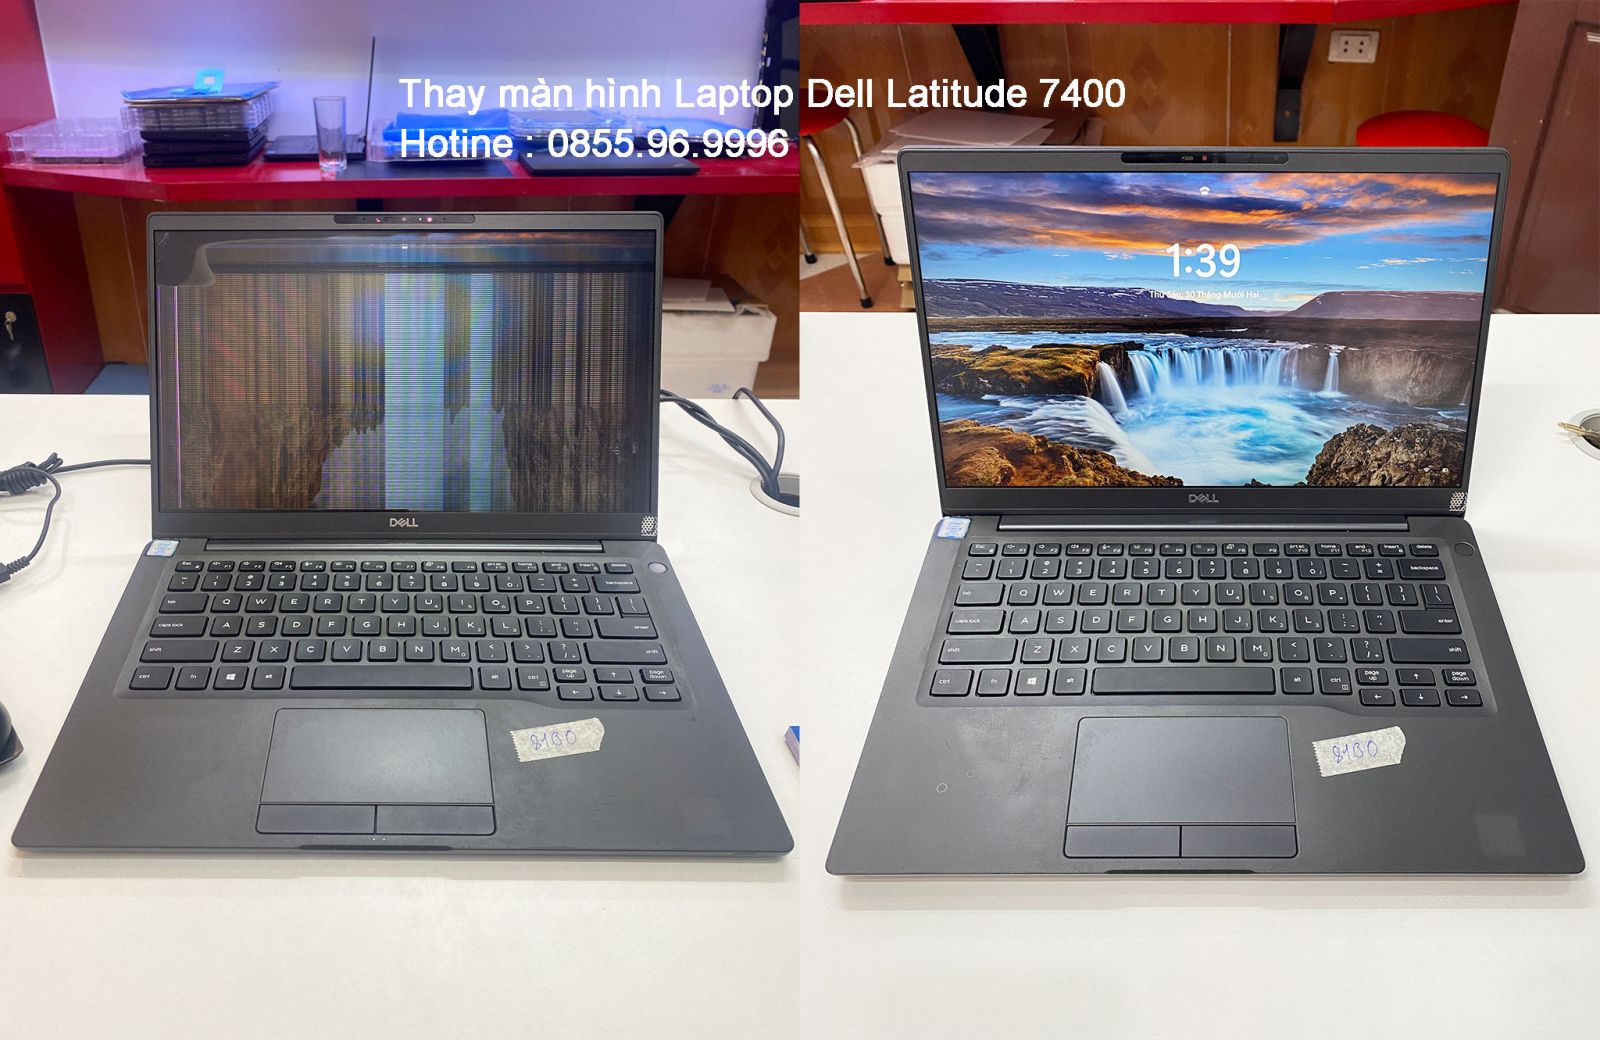 Thay màn hình laptop Dell Latitude 7400 giá rẻ tại Hà Nội